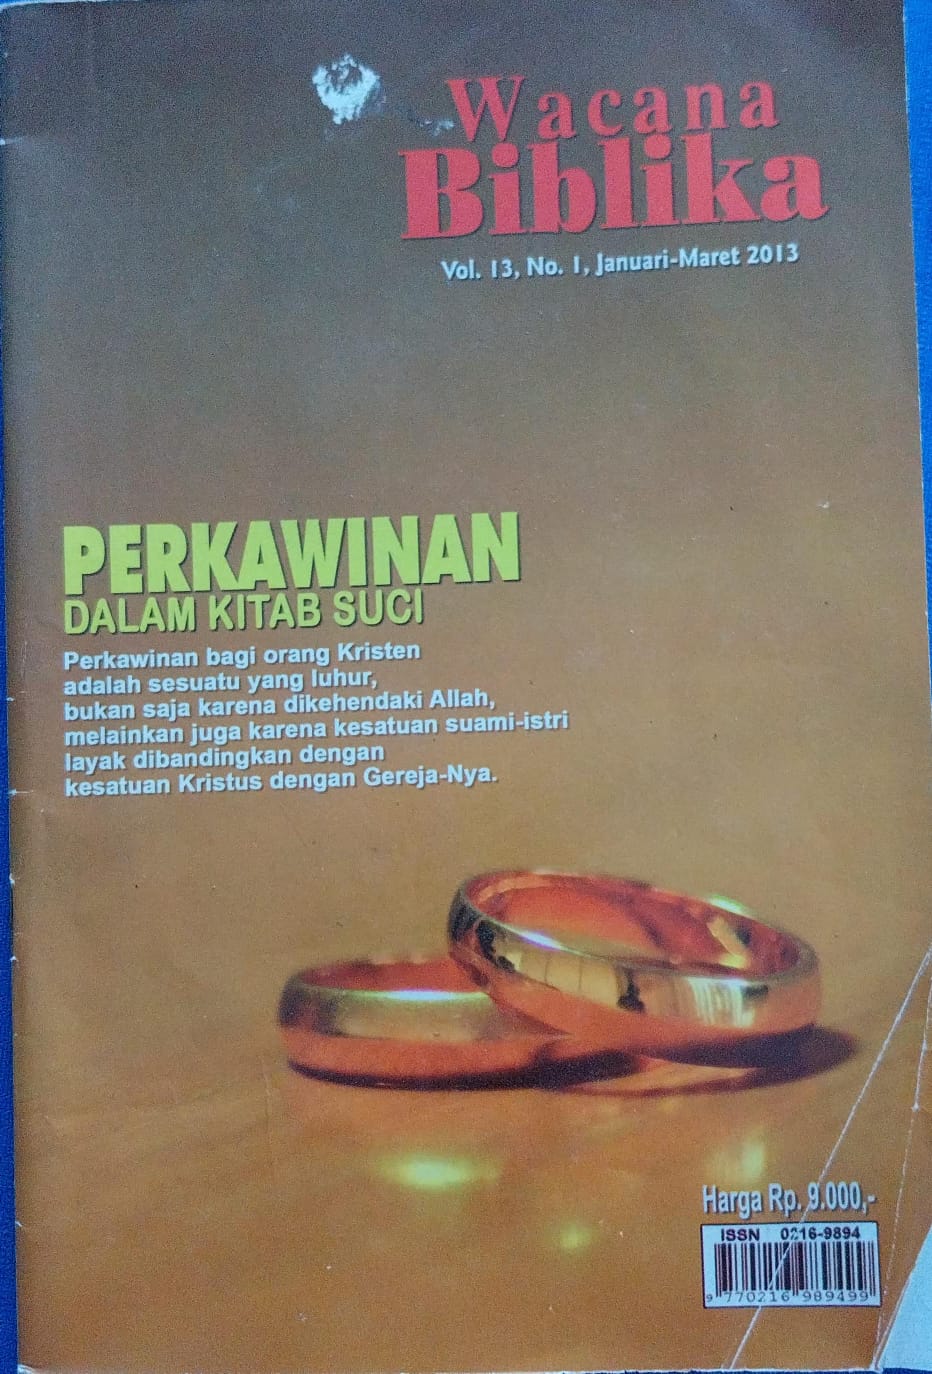 Wacana Biblika Vol. 13, No. 1, Januari-Maret 2013; Perkawinan dalam Kitab Suci